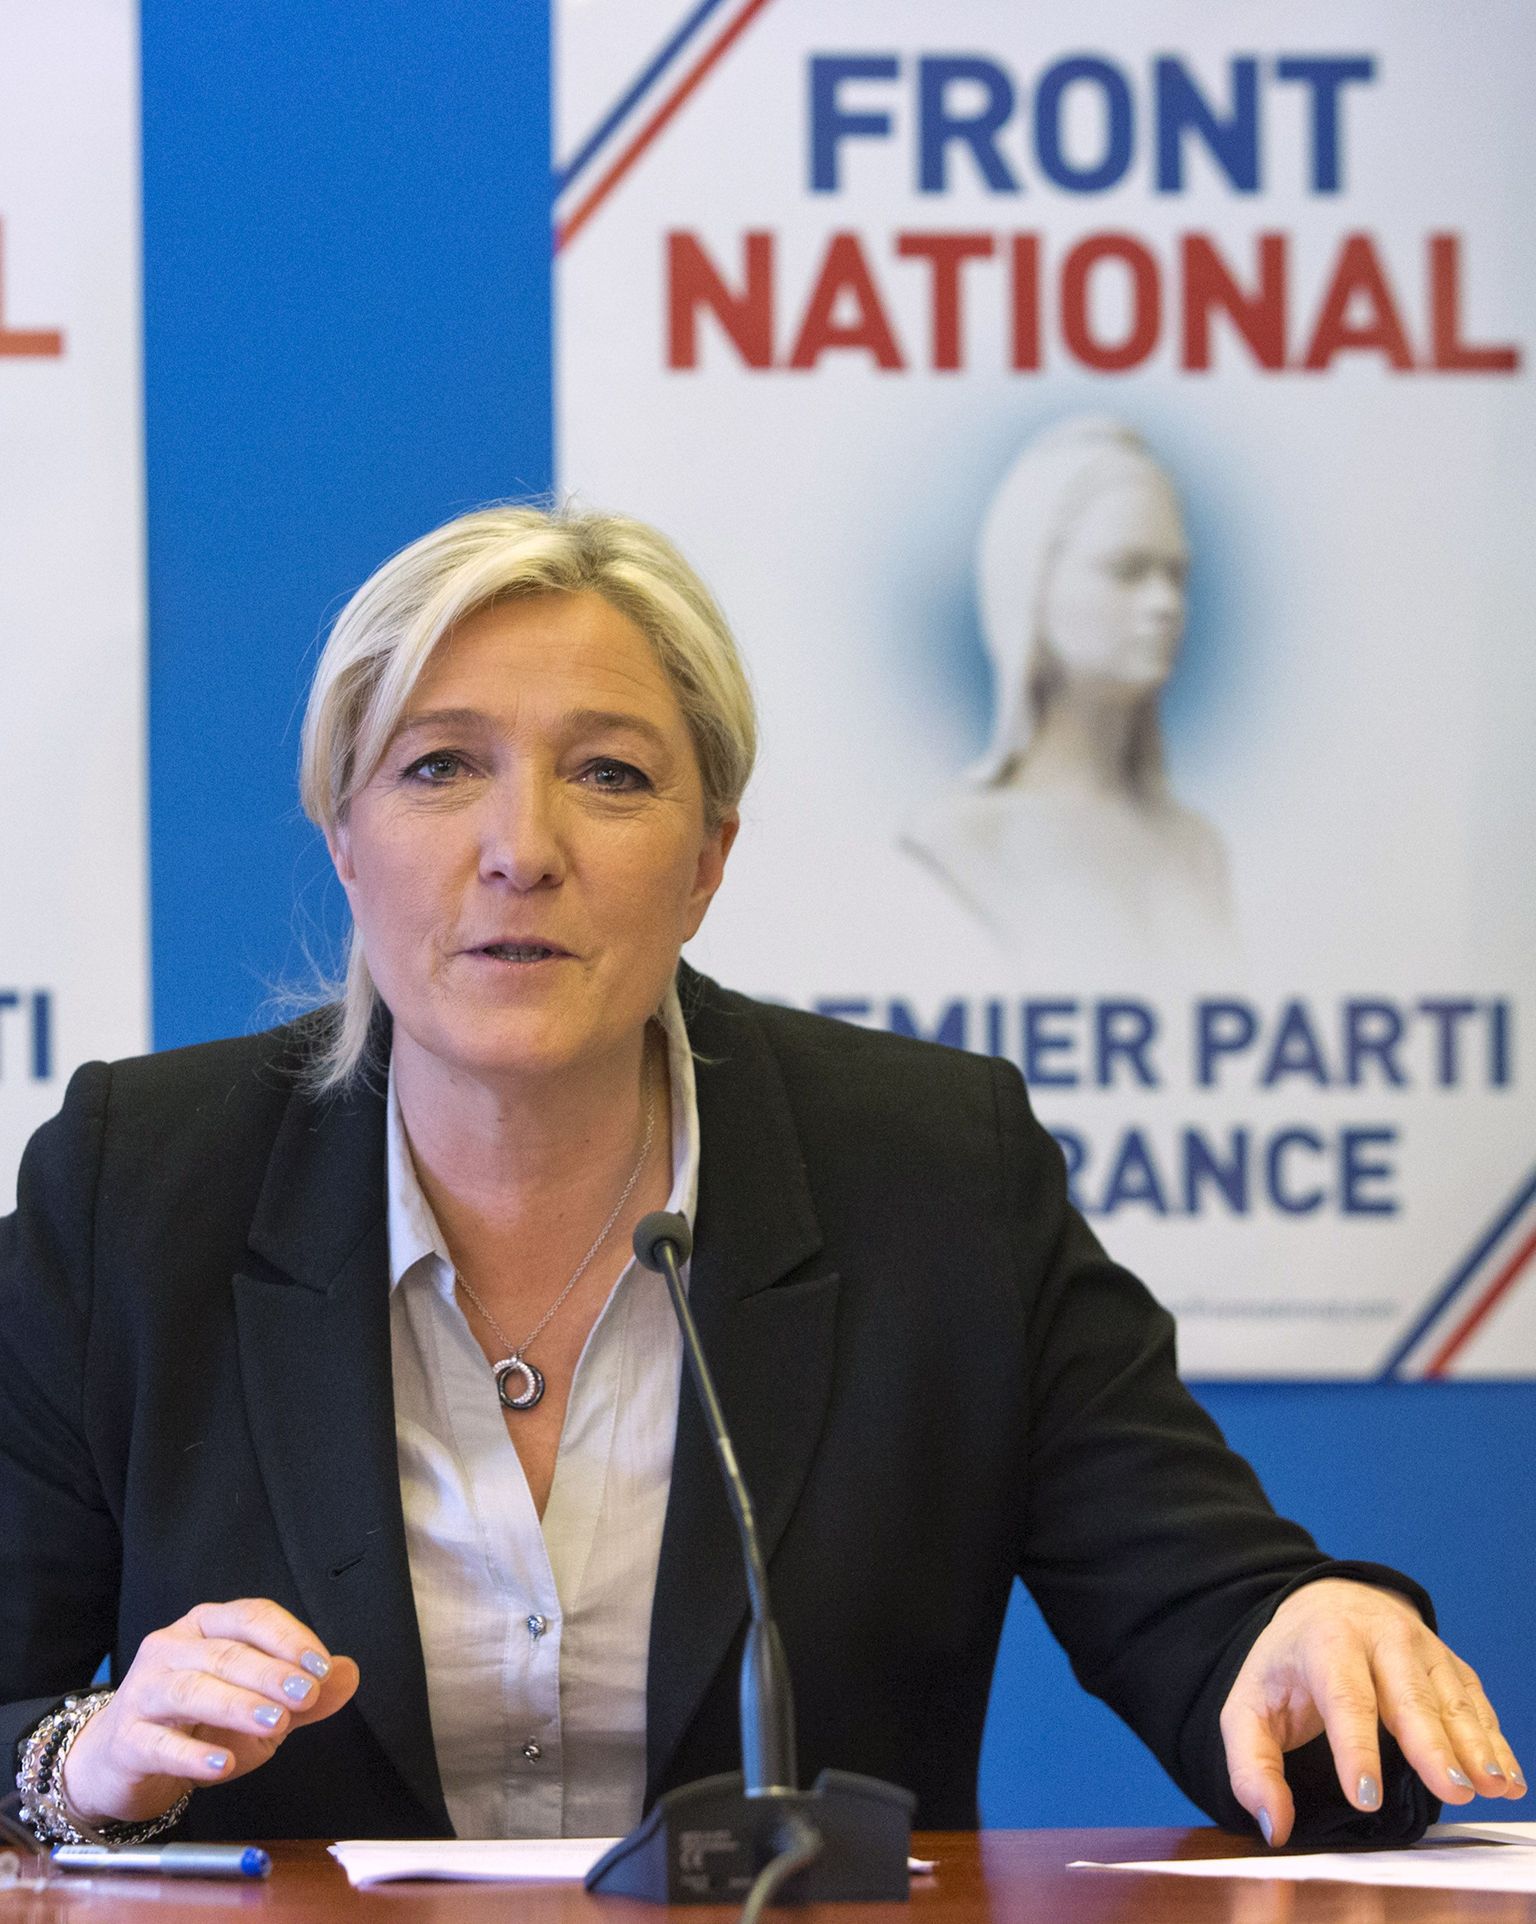 Prantsuse paremäärmusliku partei Front Nationali juht Marine Le Pen